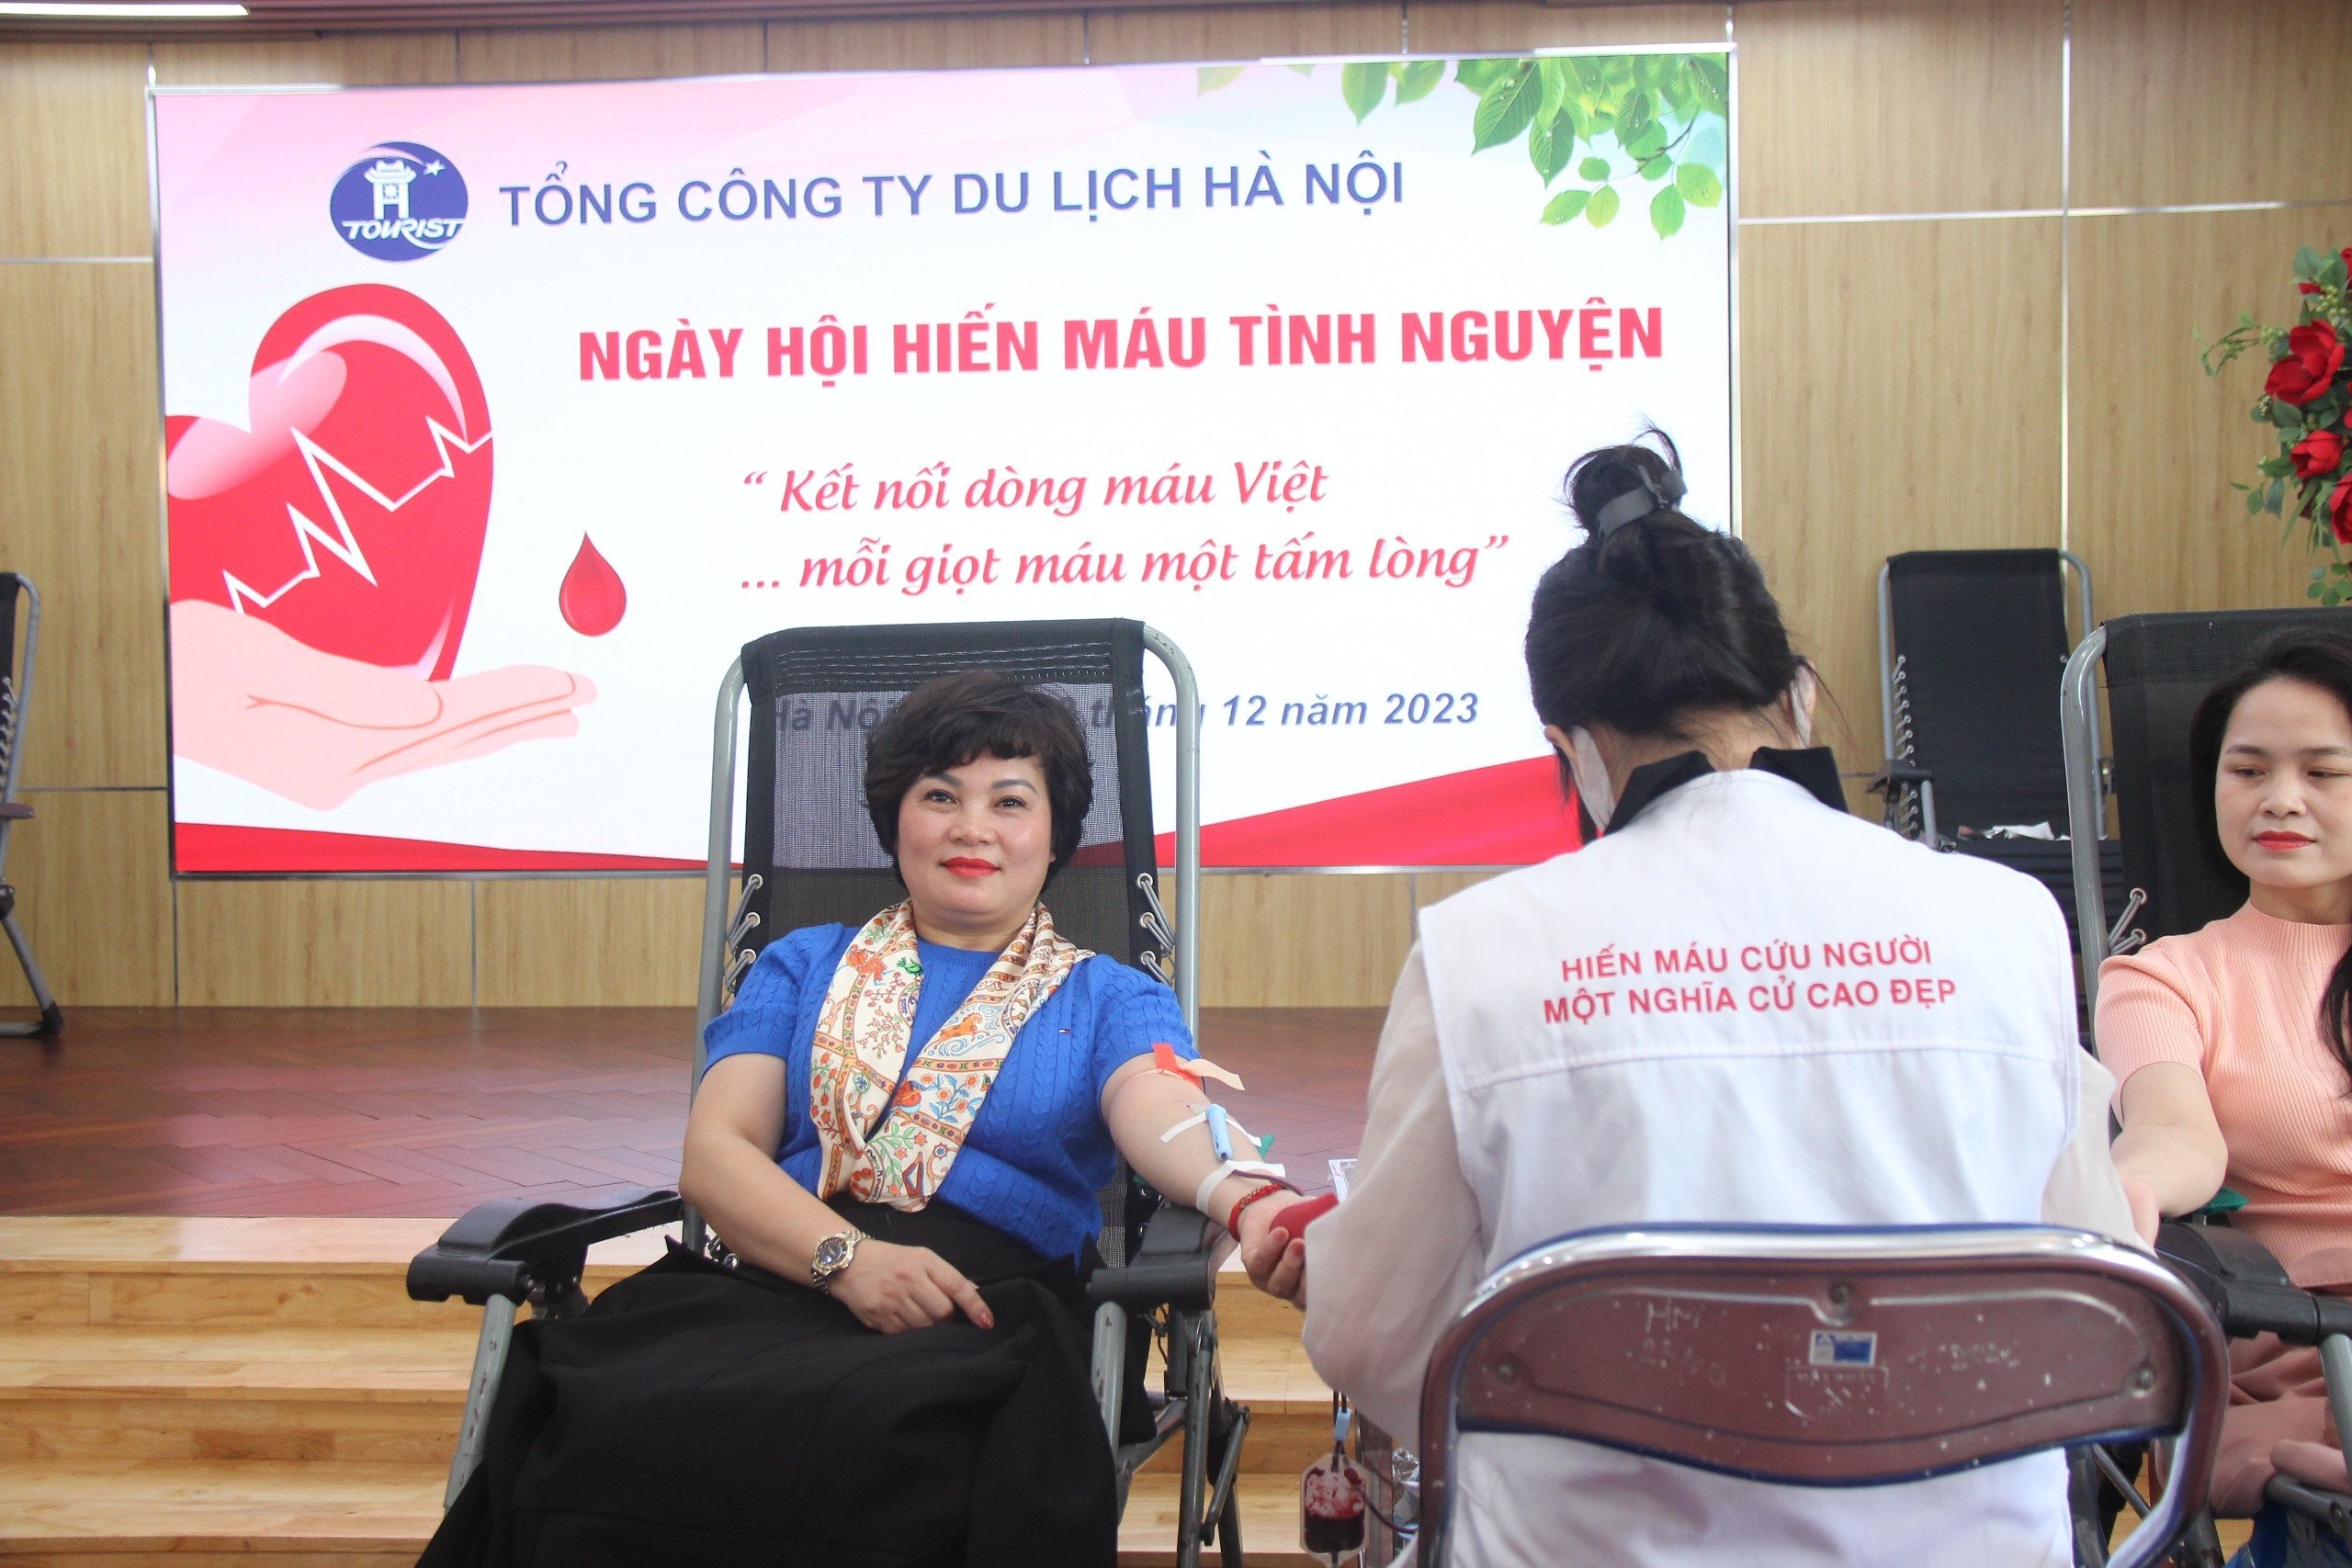 Tổng Công ty Du lịch Hà Nội: Một thập kỷ "Kết nối dòng máu Việt"